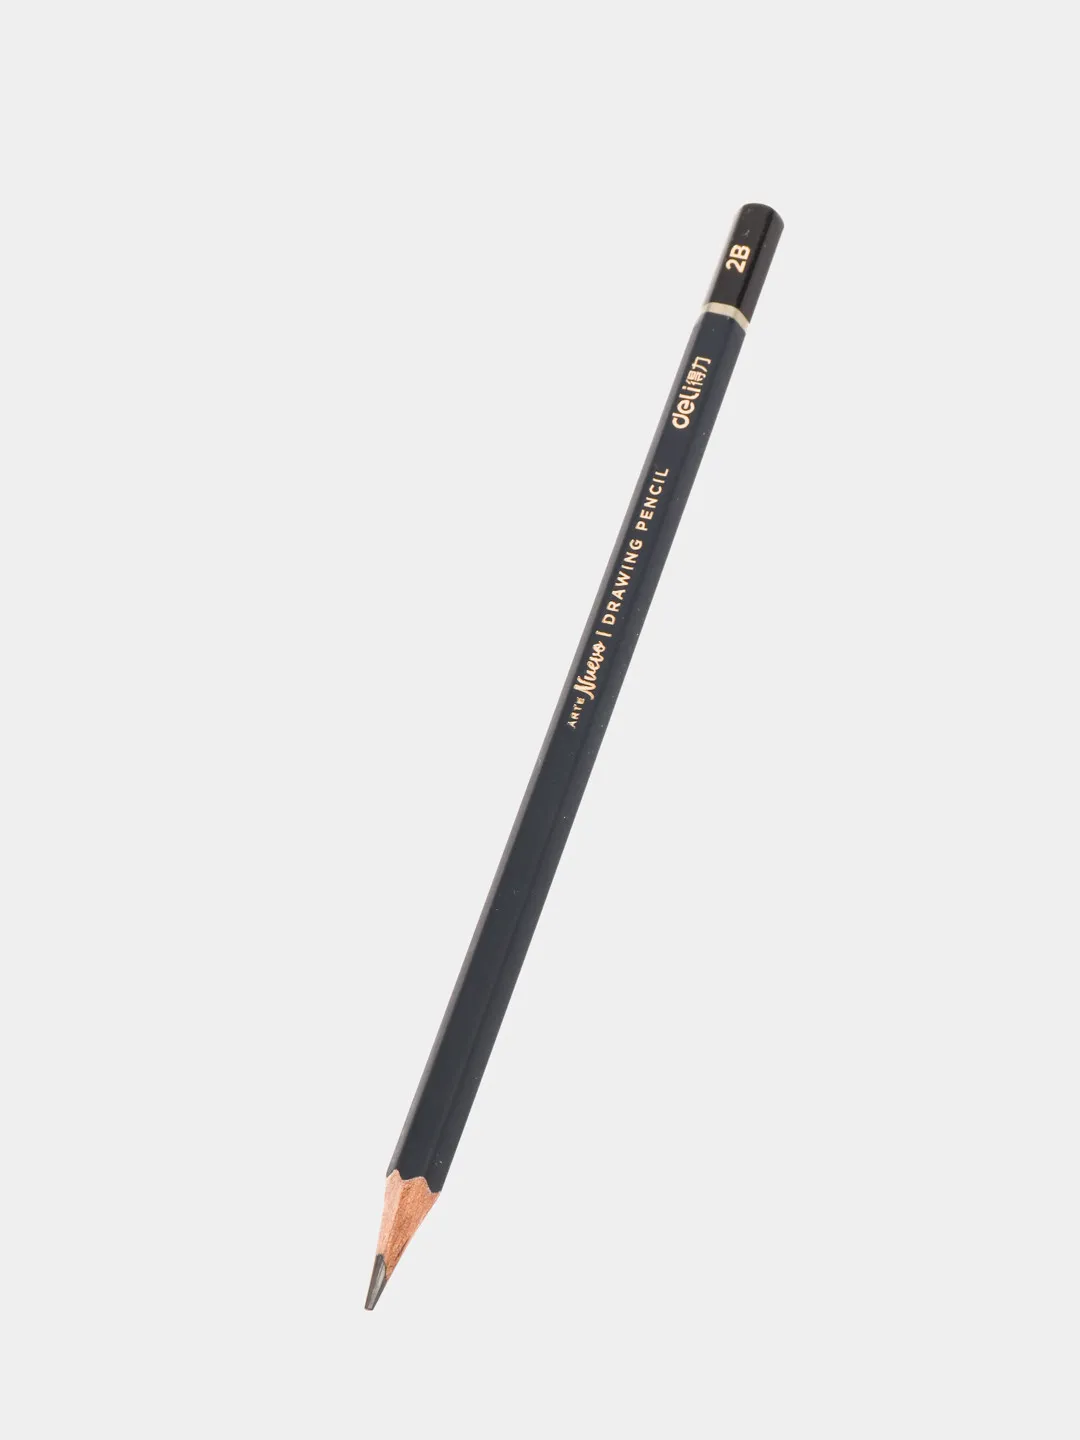 Pencil Nuevo 2B S999 Deli#1